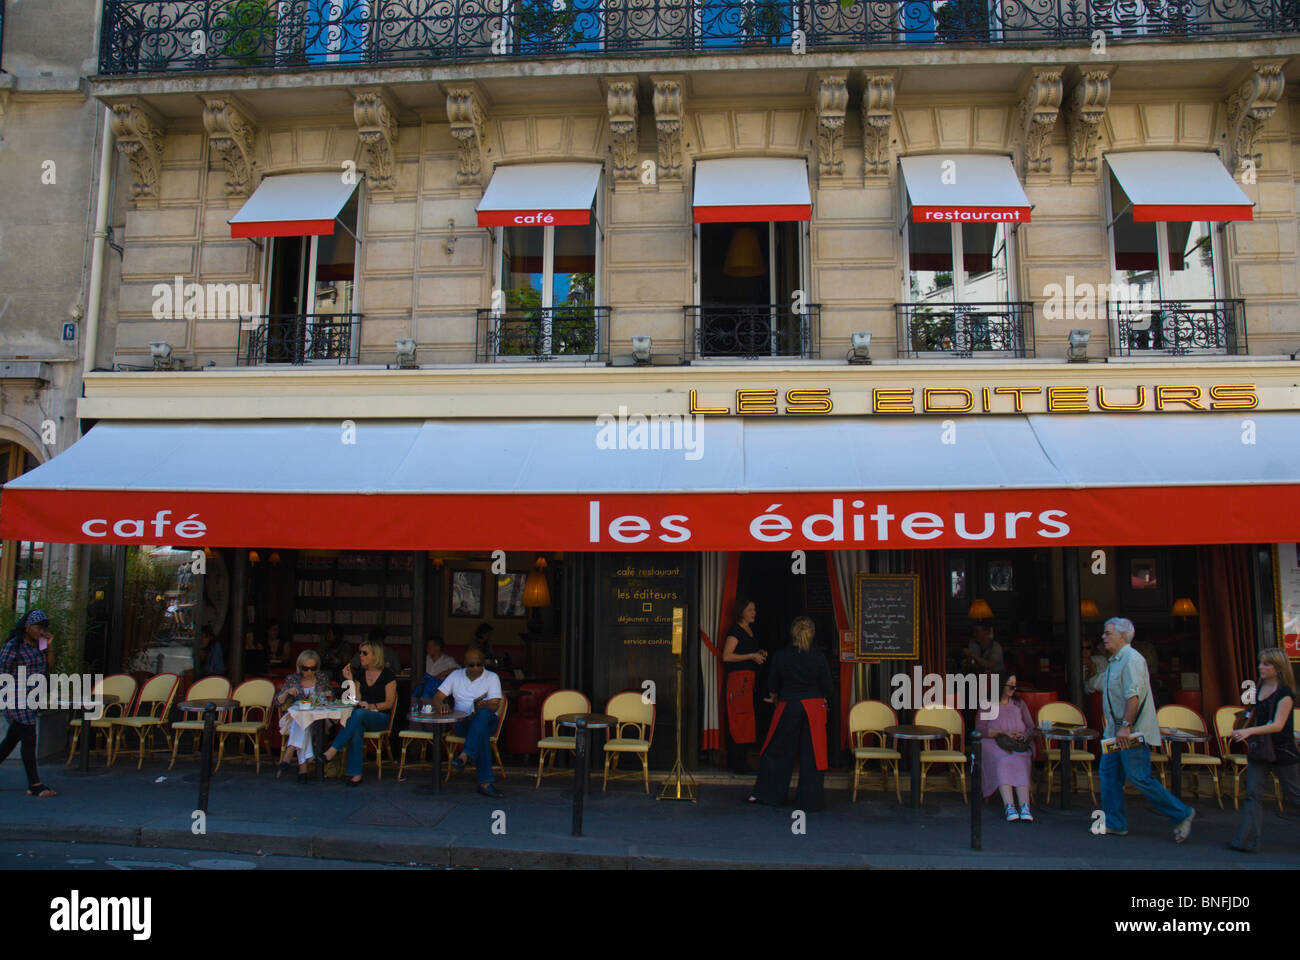 Les Editeurs cafe exterior St-Germain-des-Pres Paris France Europe Stock Photo